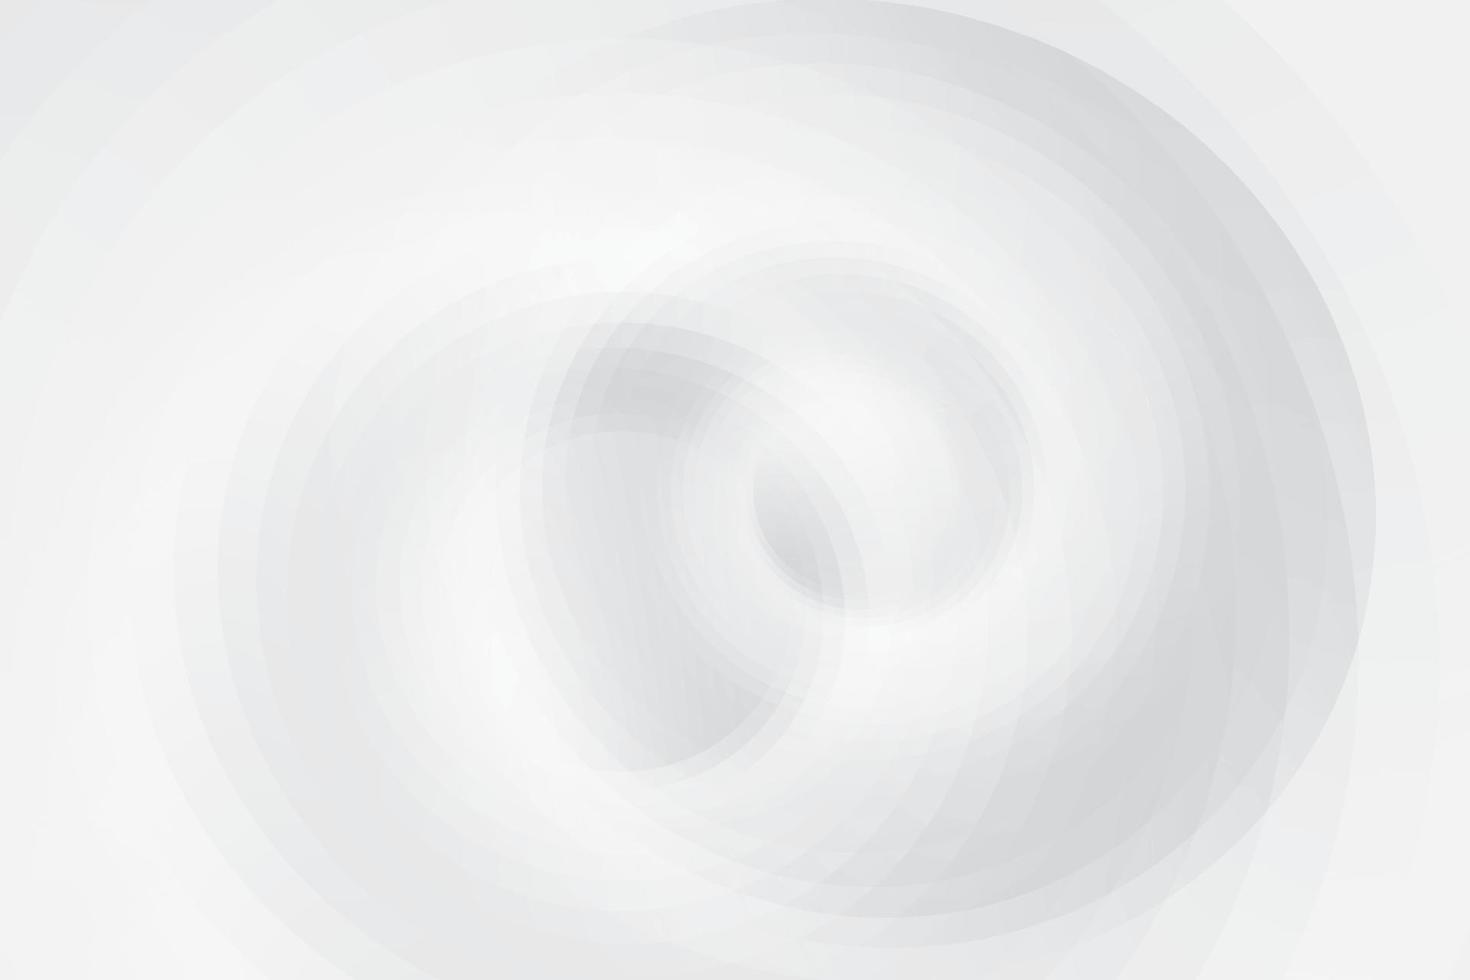 couleur blanche et grise abstraite, arrière-plan design moderne avec une forme ronde géométrique. illustration vectorielle. vecteur